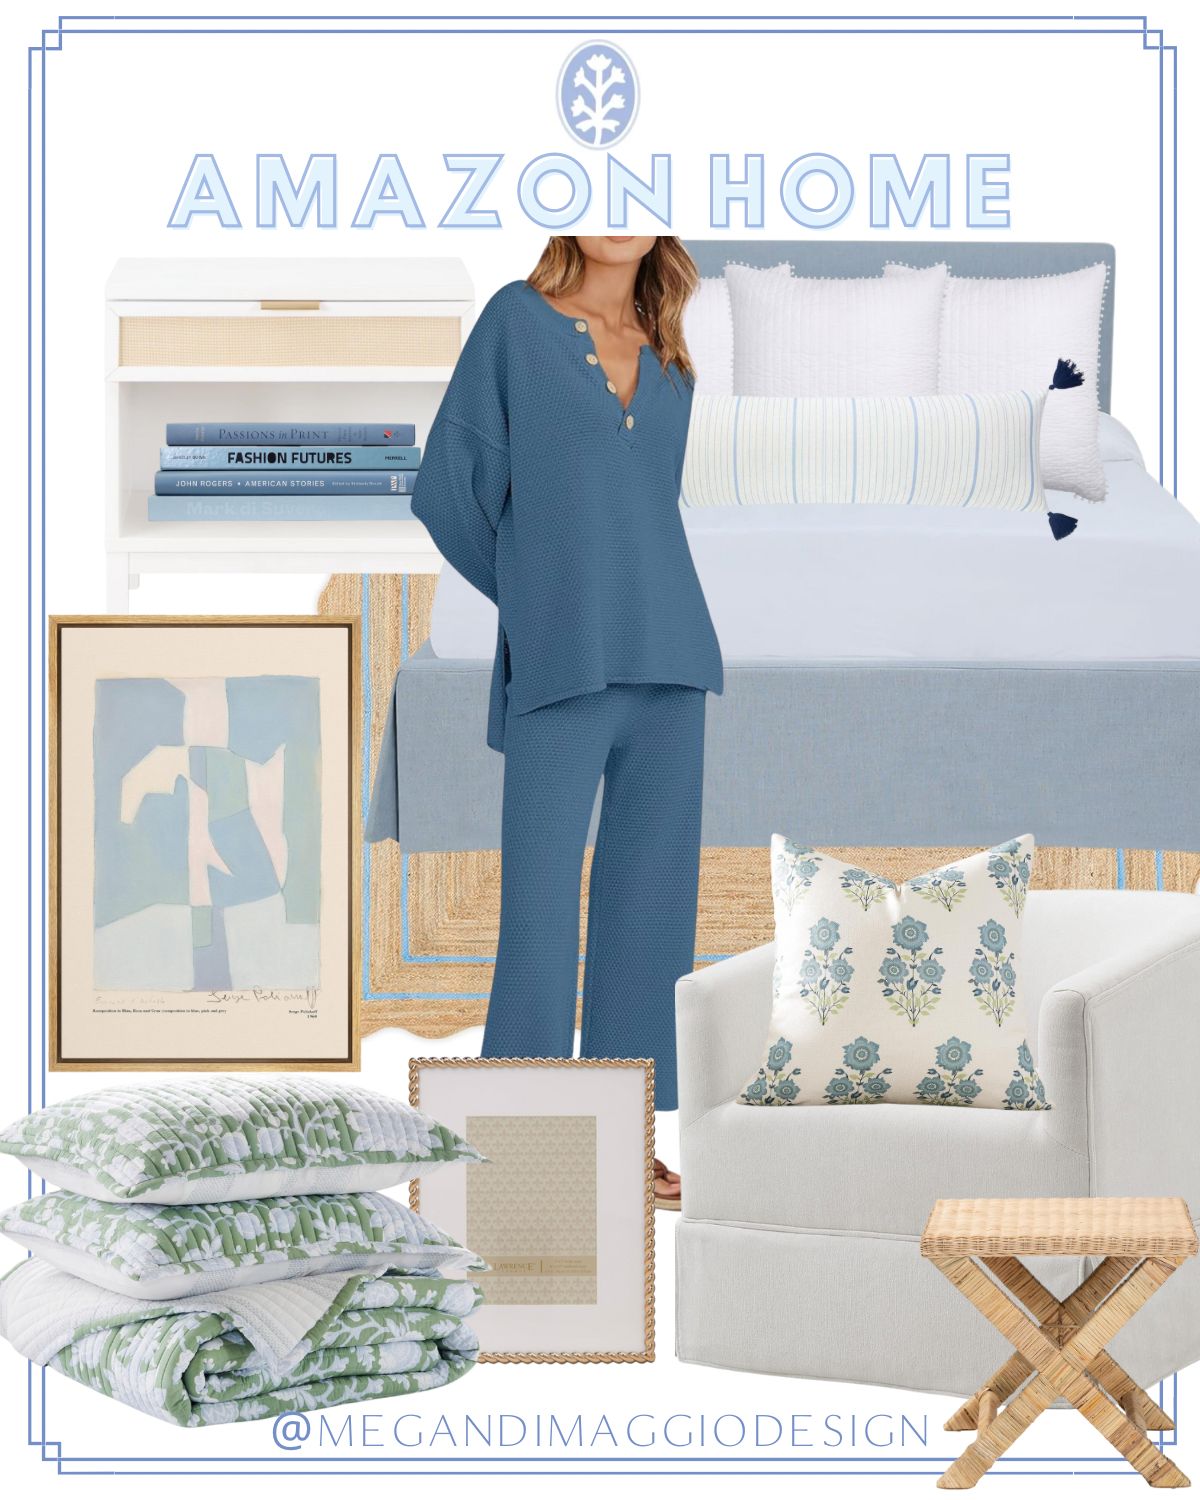 Megan DiMaggio Design | Amazon (US)